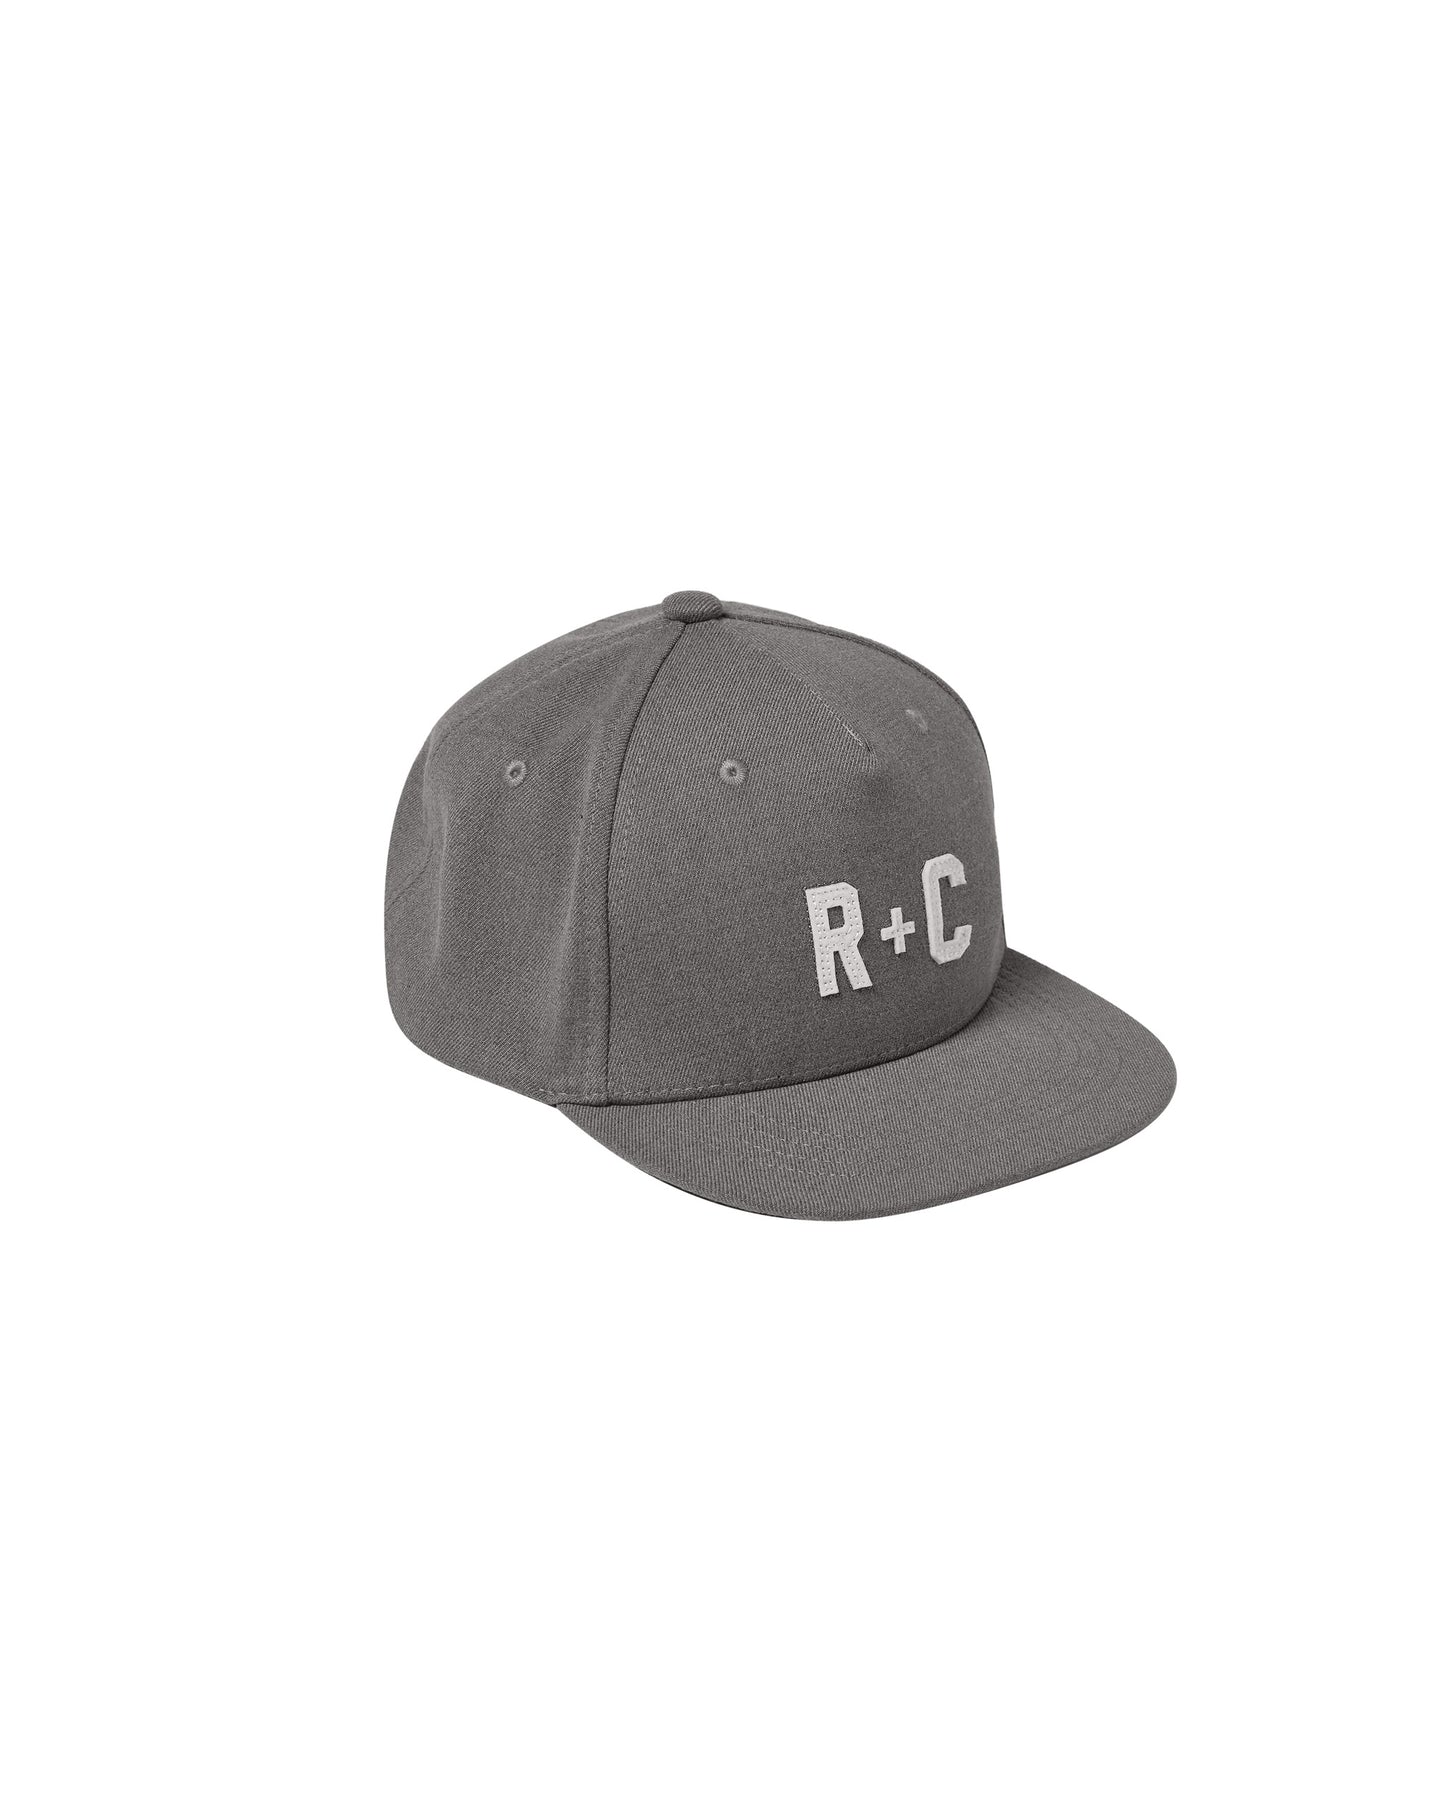 RYLEE + CRU HAT - RC